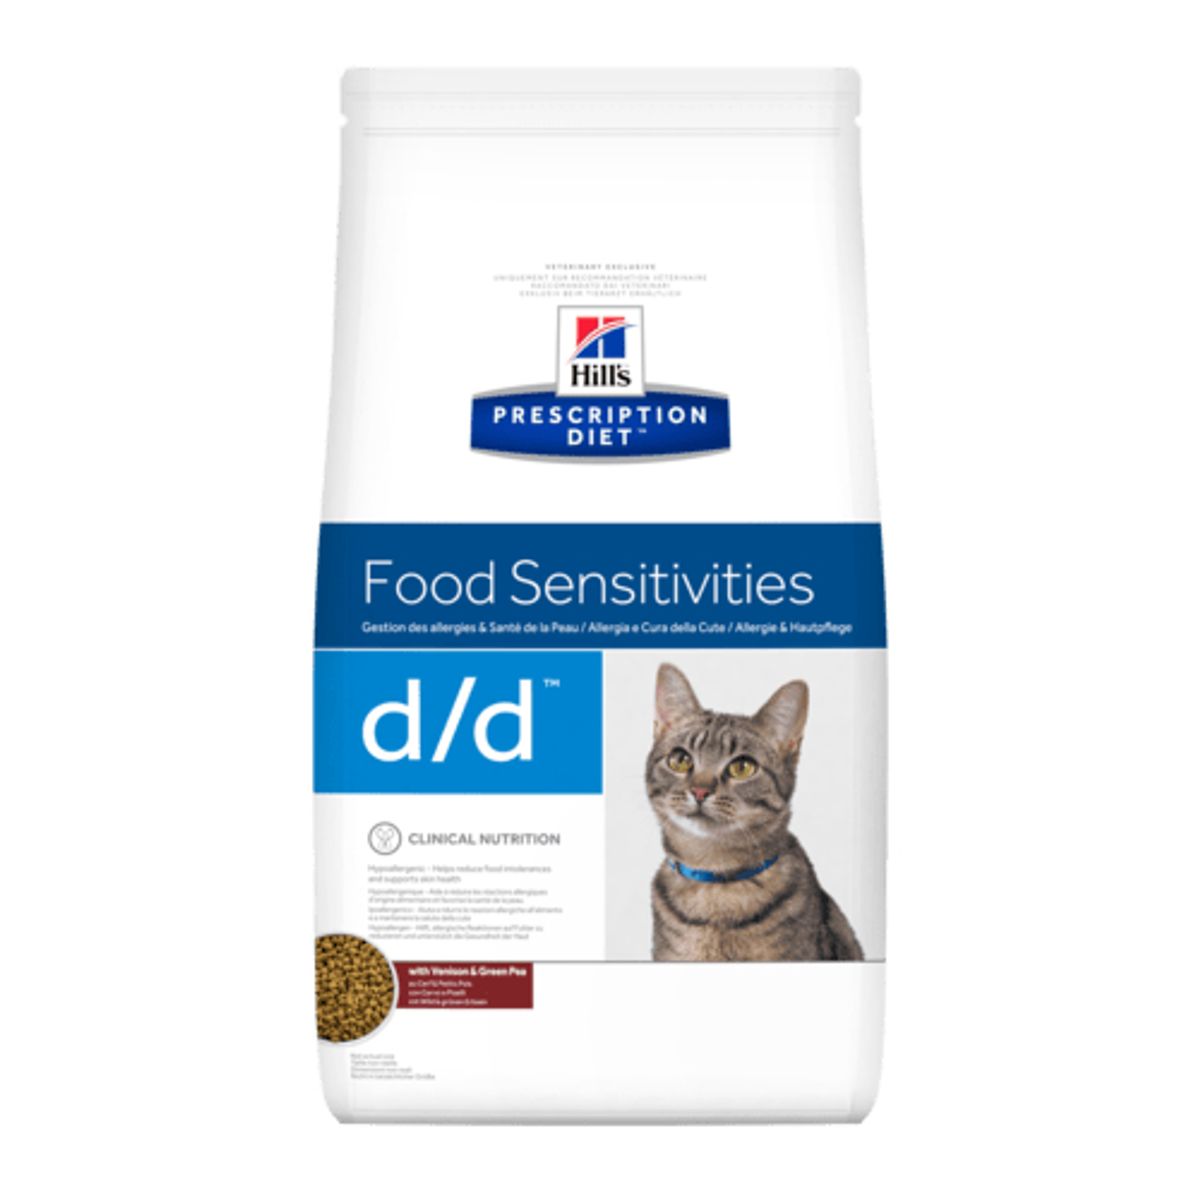 Feline d/d Chevreuil - Hill's Prescription Diet (1.5 kg)